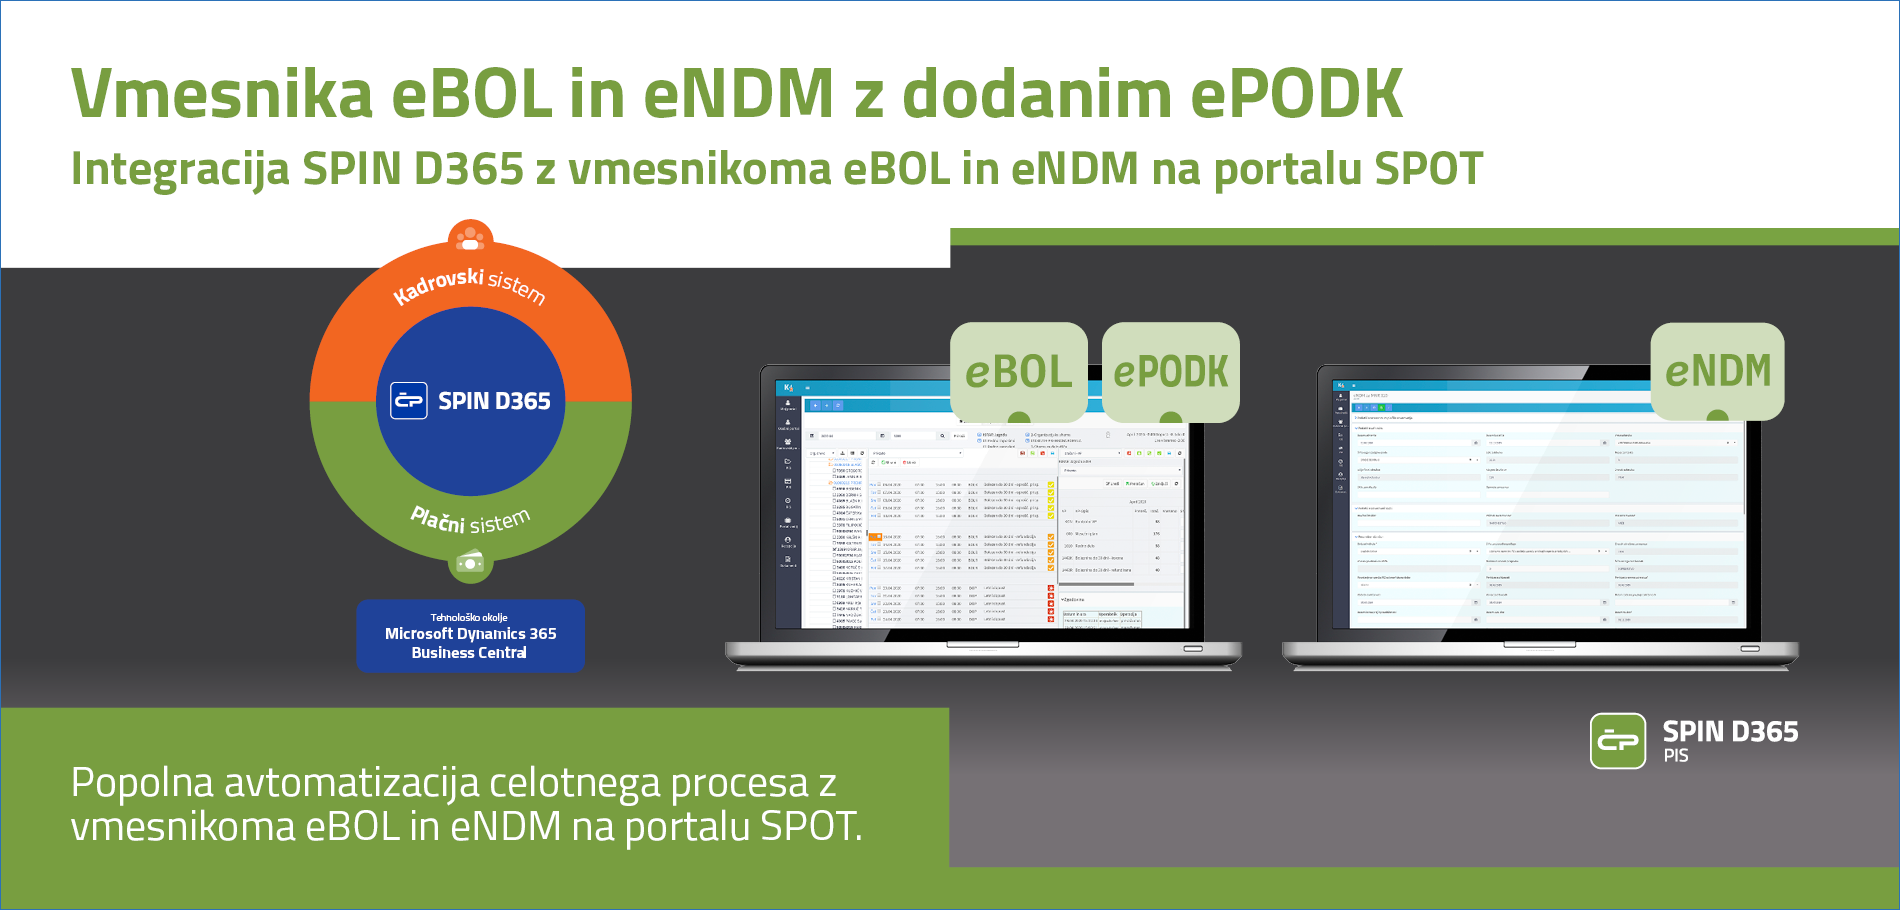 Letaki in brošure - SPIN D365: PIS - Vmesnika eBOL in eNMD z dodanim ePODK 